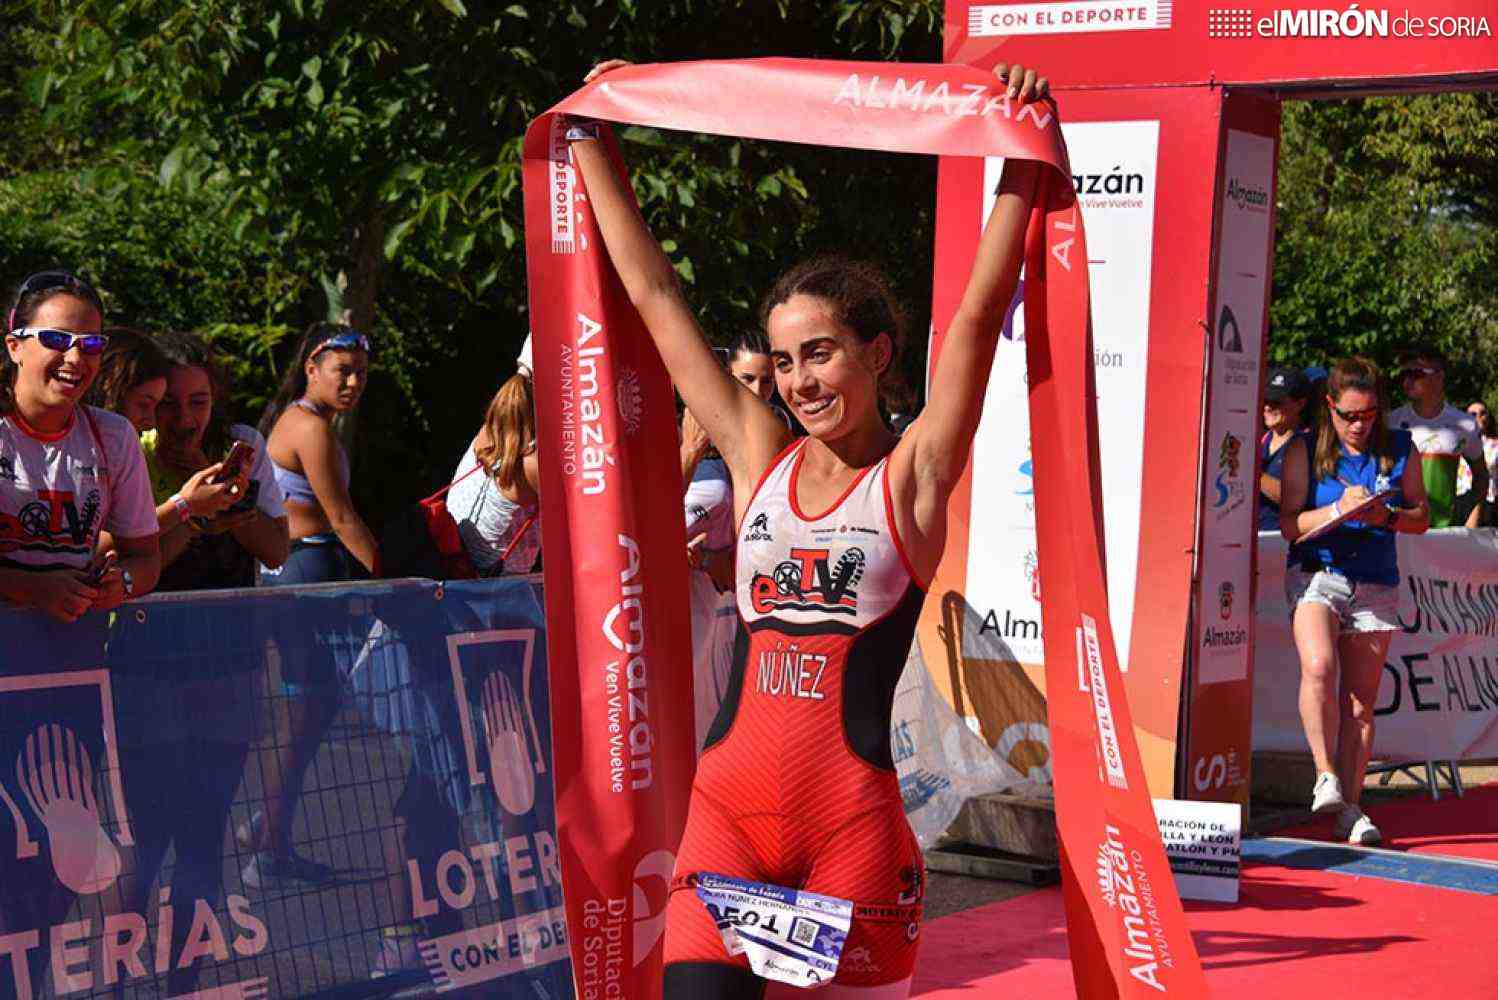 Almazán recibirá a 1.750 triatletas en Campeonatos de España